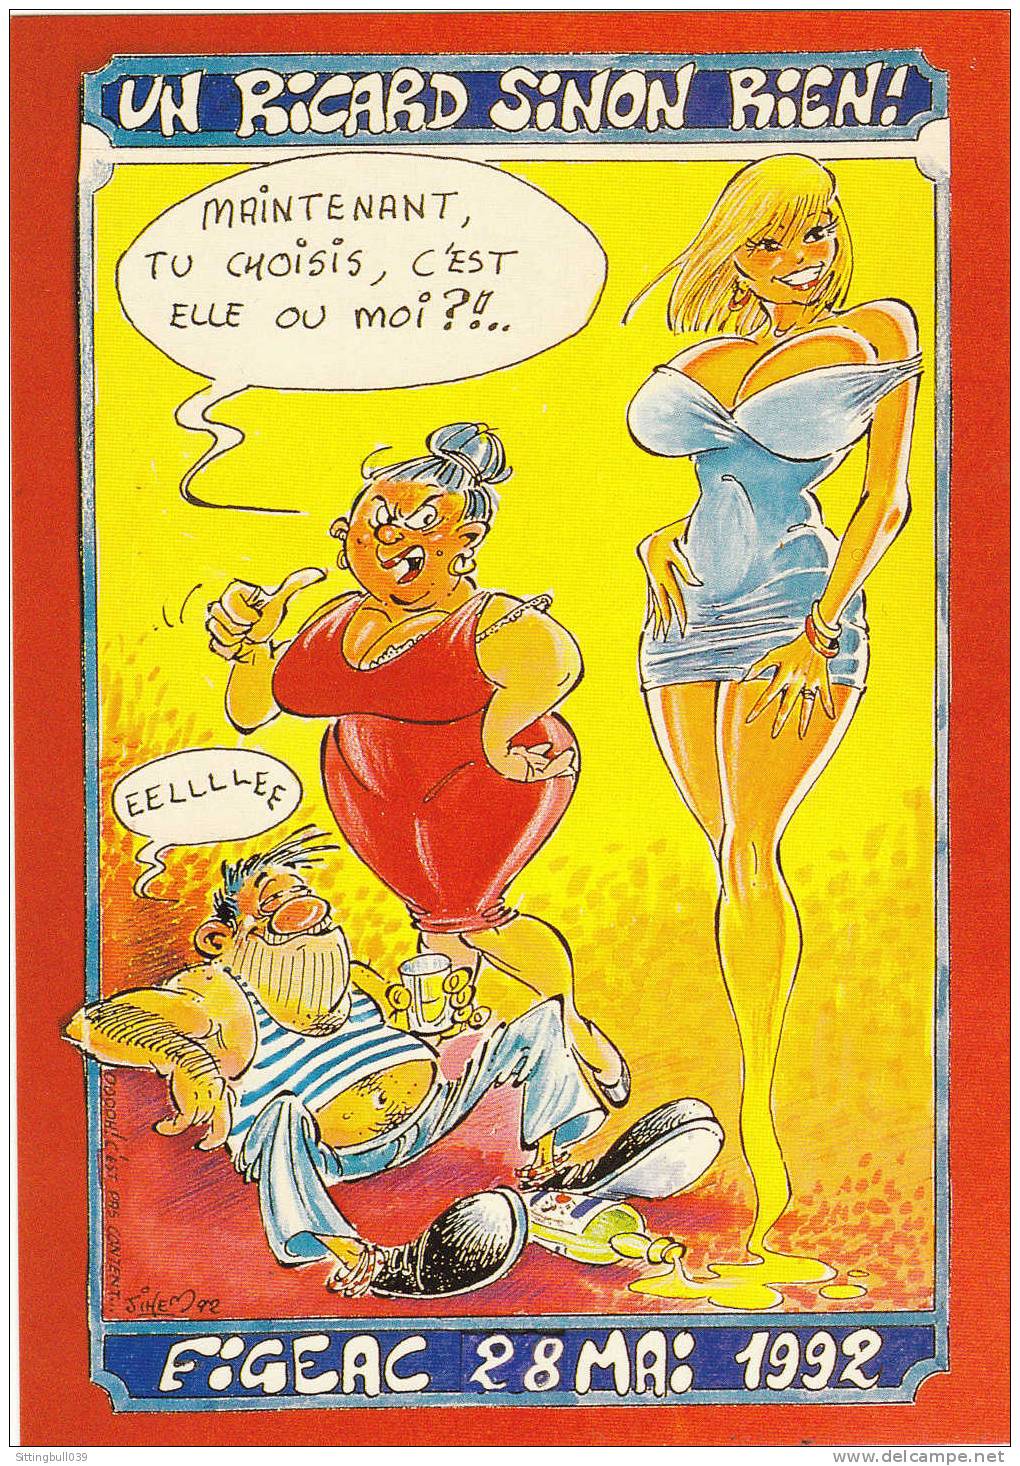 JIHEM. Carte Postale Du Xe Salon Des Collectionneurs, Figeac 1992 (LOT). Un Ricard Sinon Rien !. TL 2000 EX. - Bourses & Salons De Collections